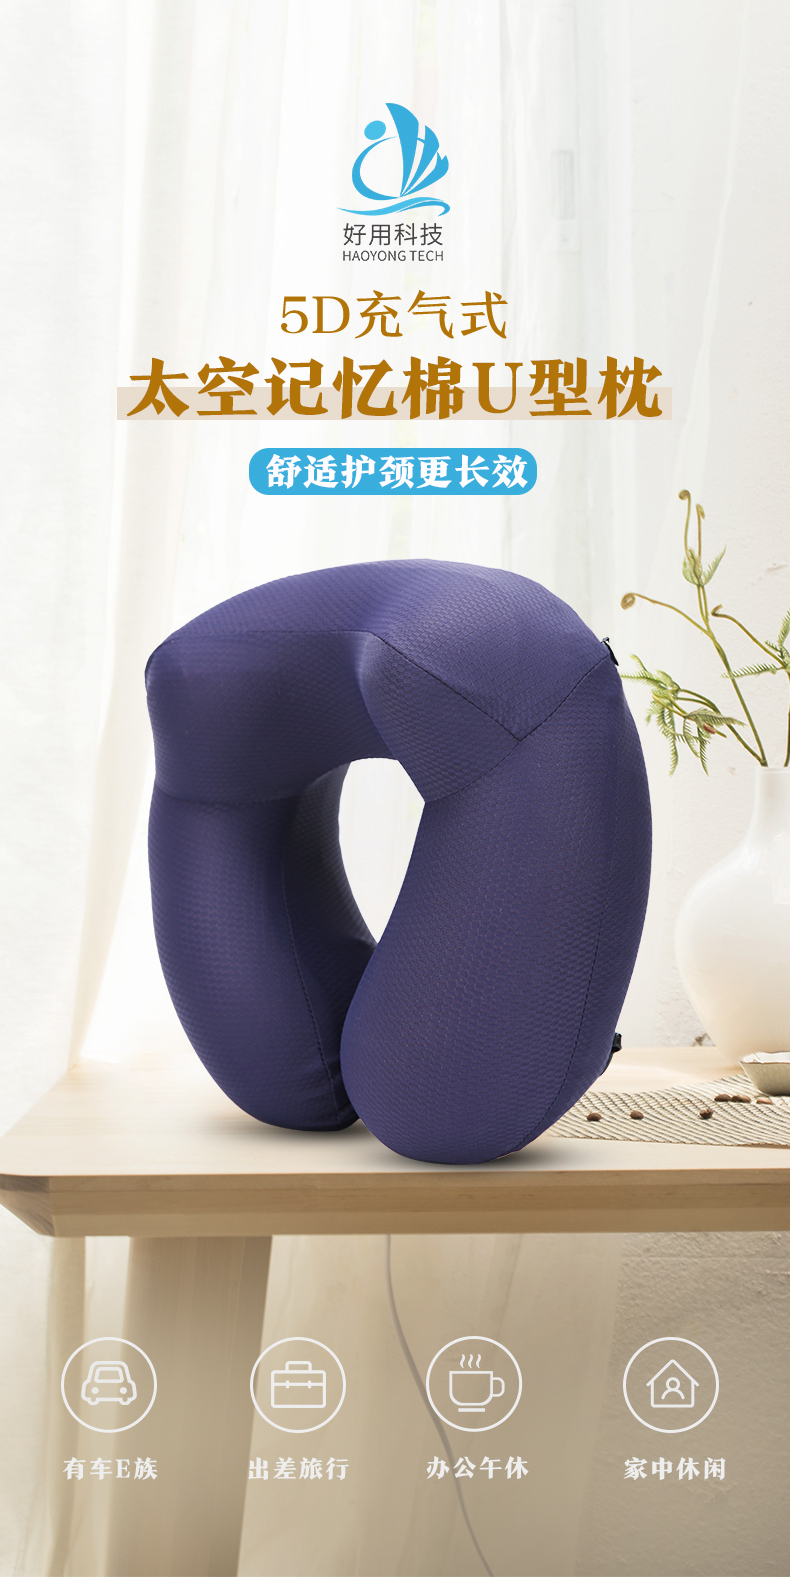 我们推荐脖子靠枕U形枕_记忆u形枕相关-广州好用科技有限公司